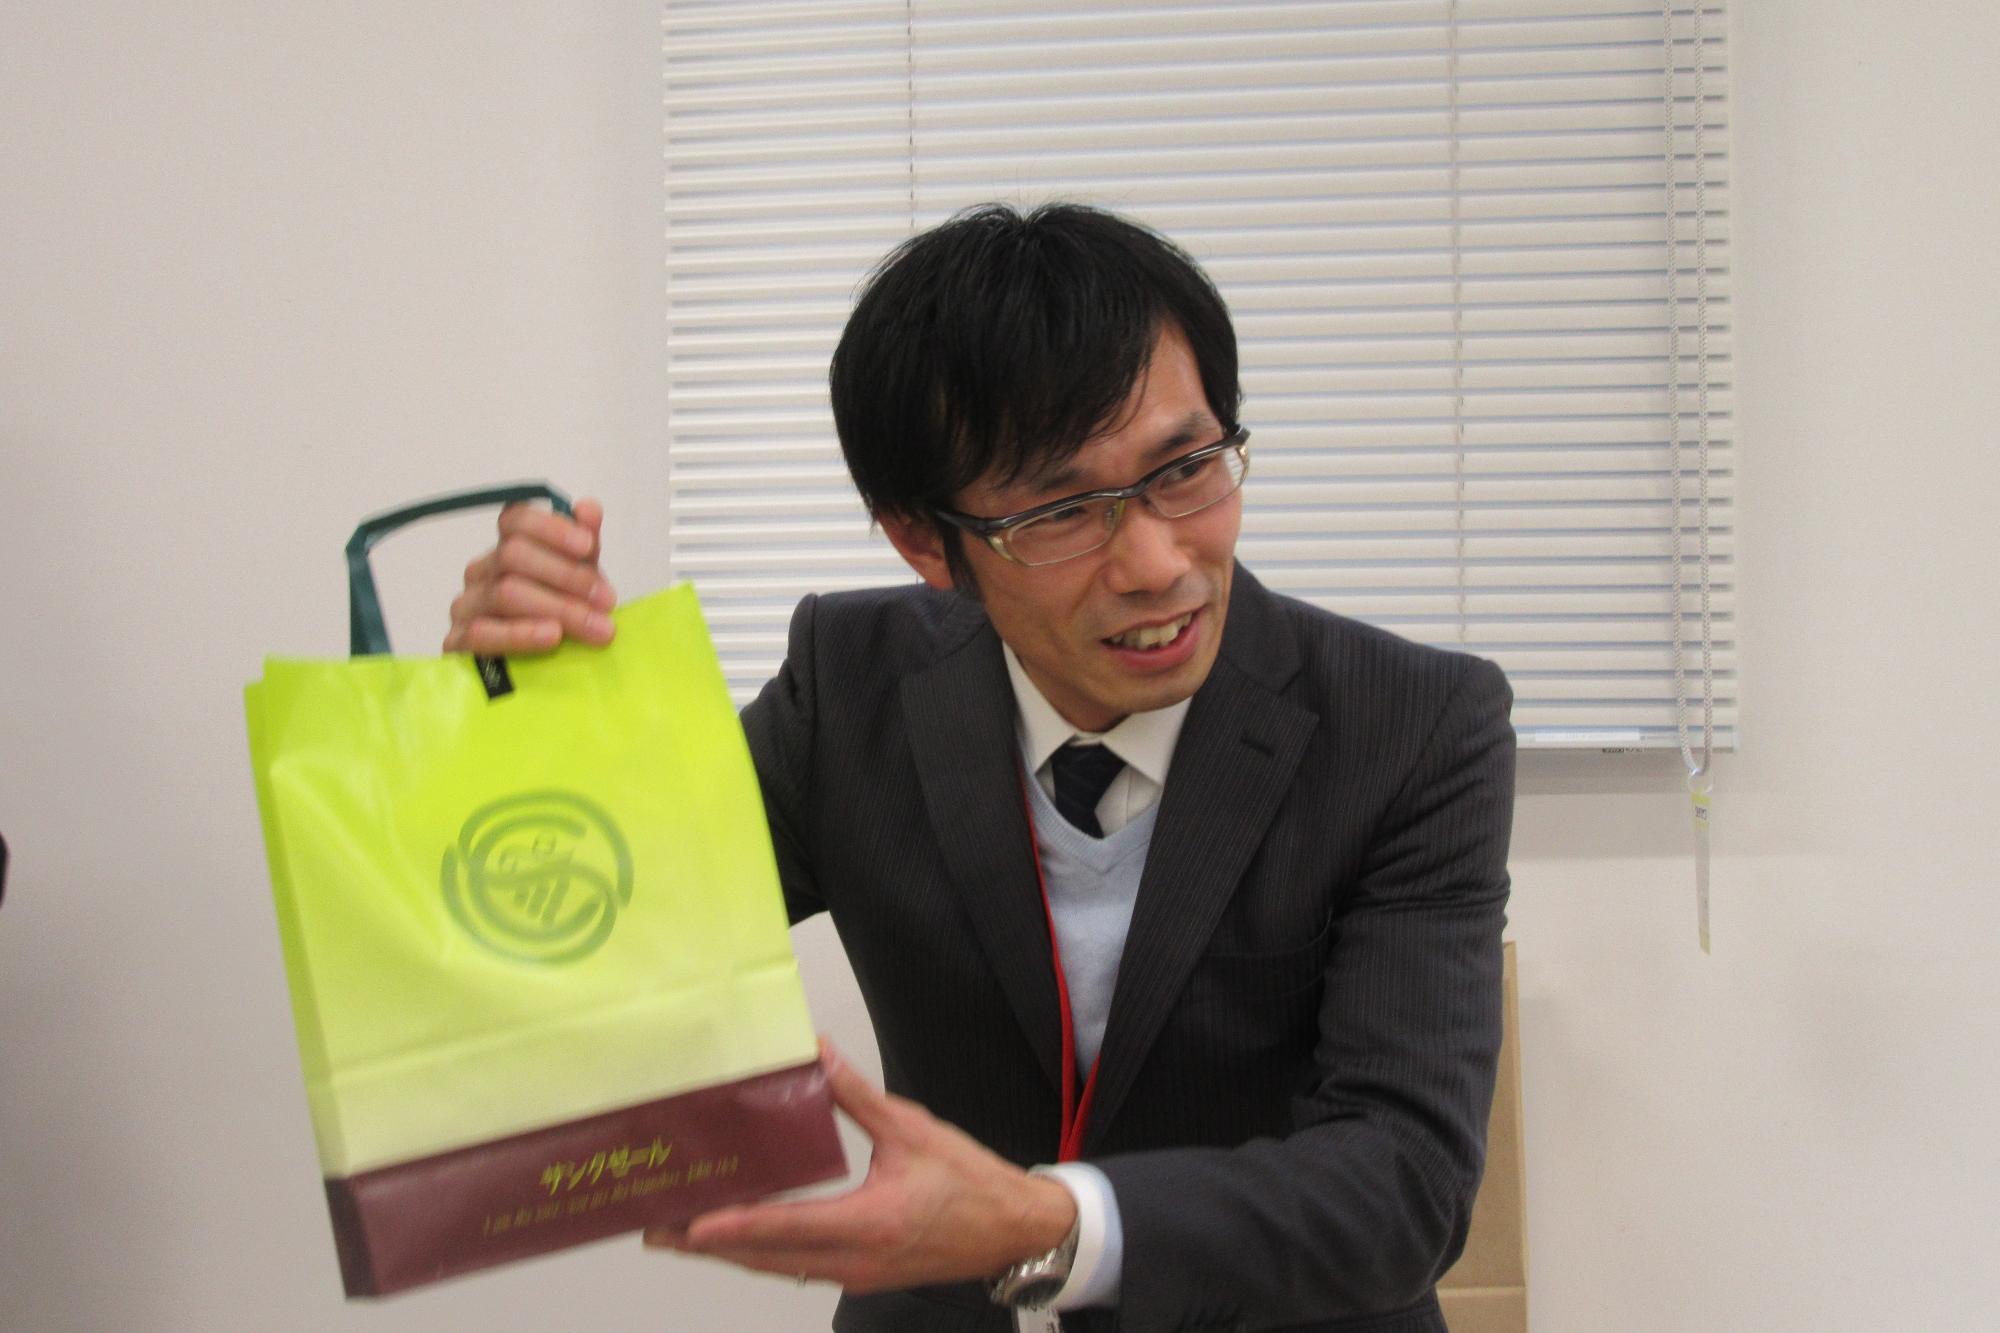 賞を獲得し商品を手にしている平井さんを写した写真。